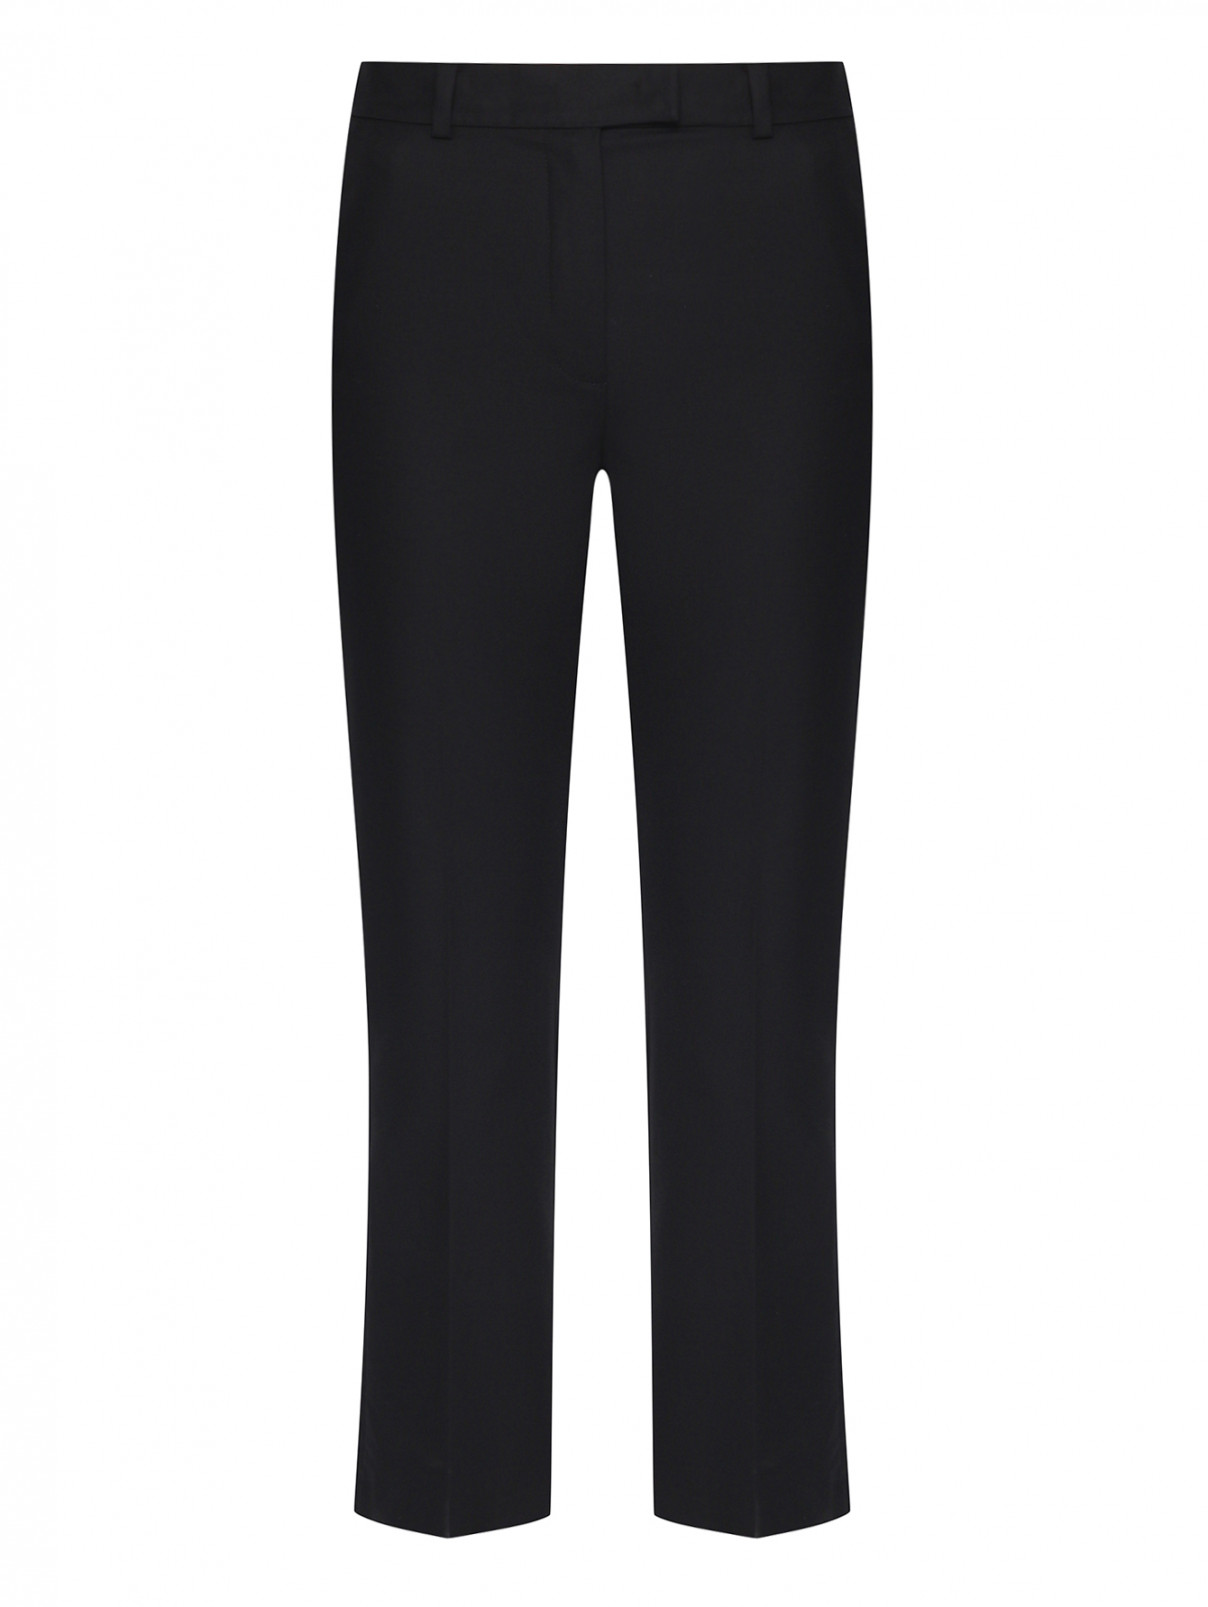 Укороченные брюки из хлопка Luisa Spagnoli  –  Общий вид  – Цвет:  Черный